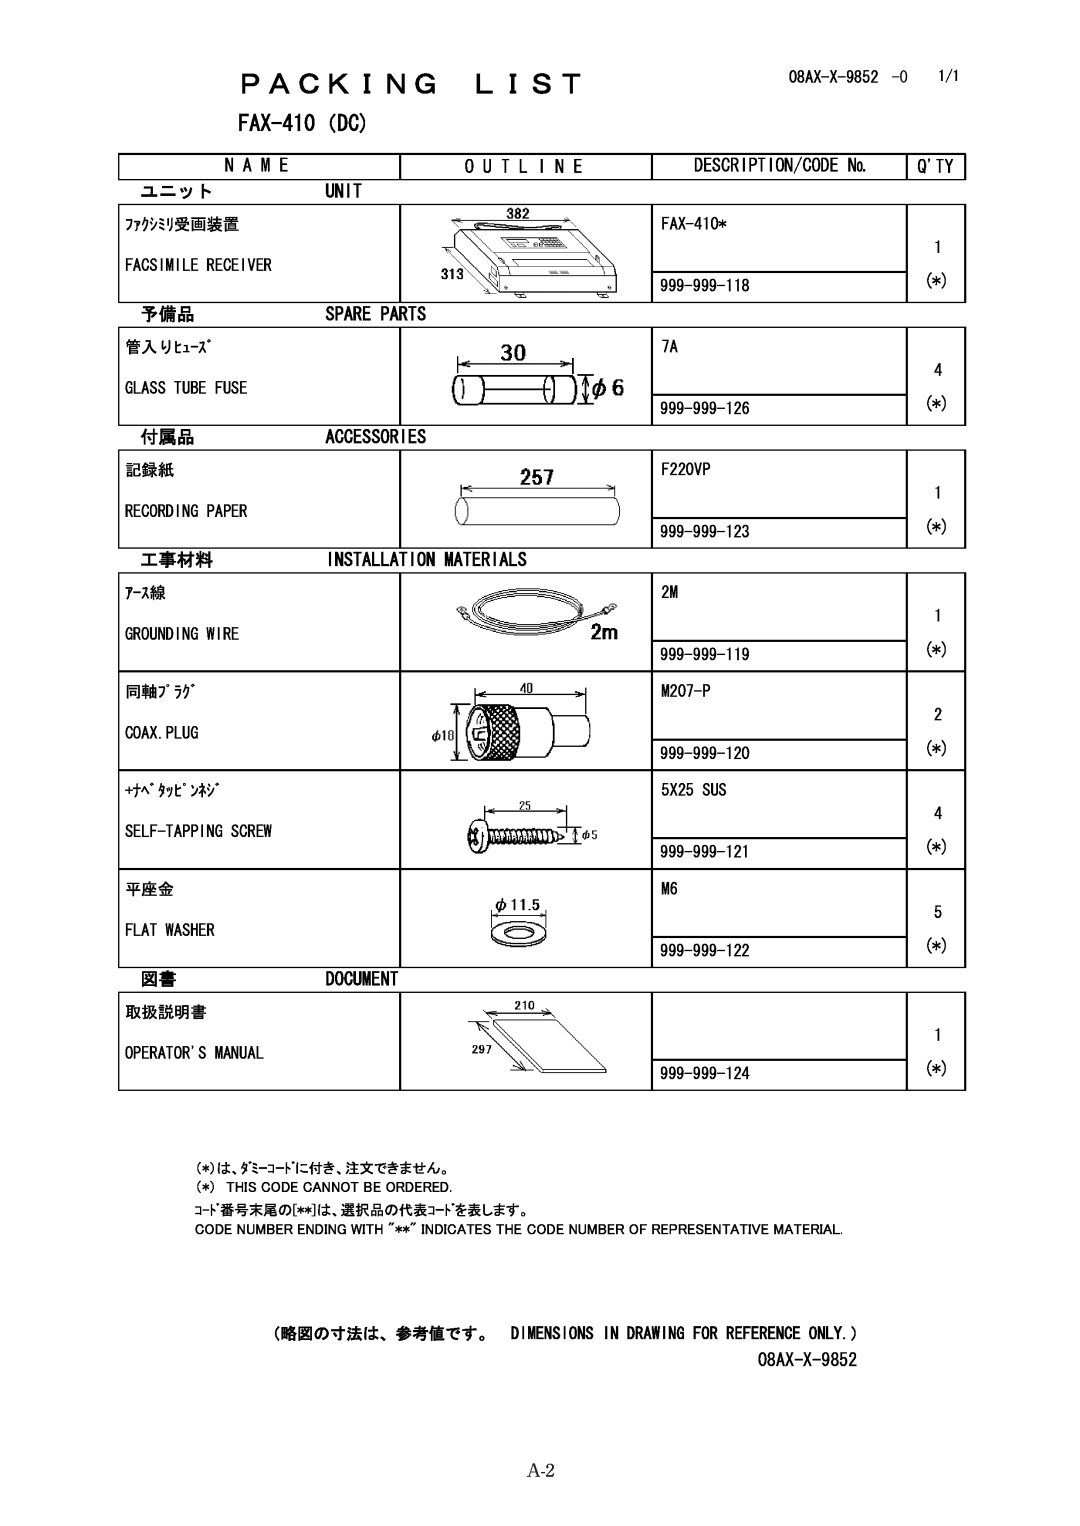 Furuno FAX-410 manual # &%, 0#/, 176.+0, 5%4+26+10%1&, 70+6, +056#..#6+10/#64+#.5, # 